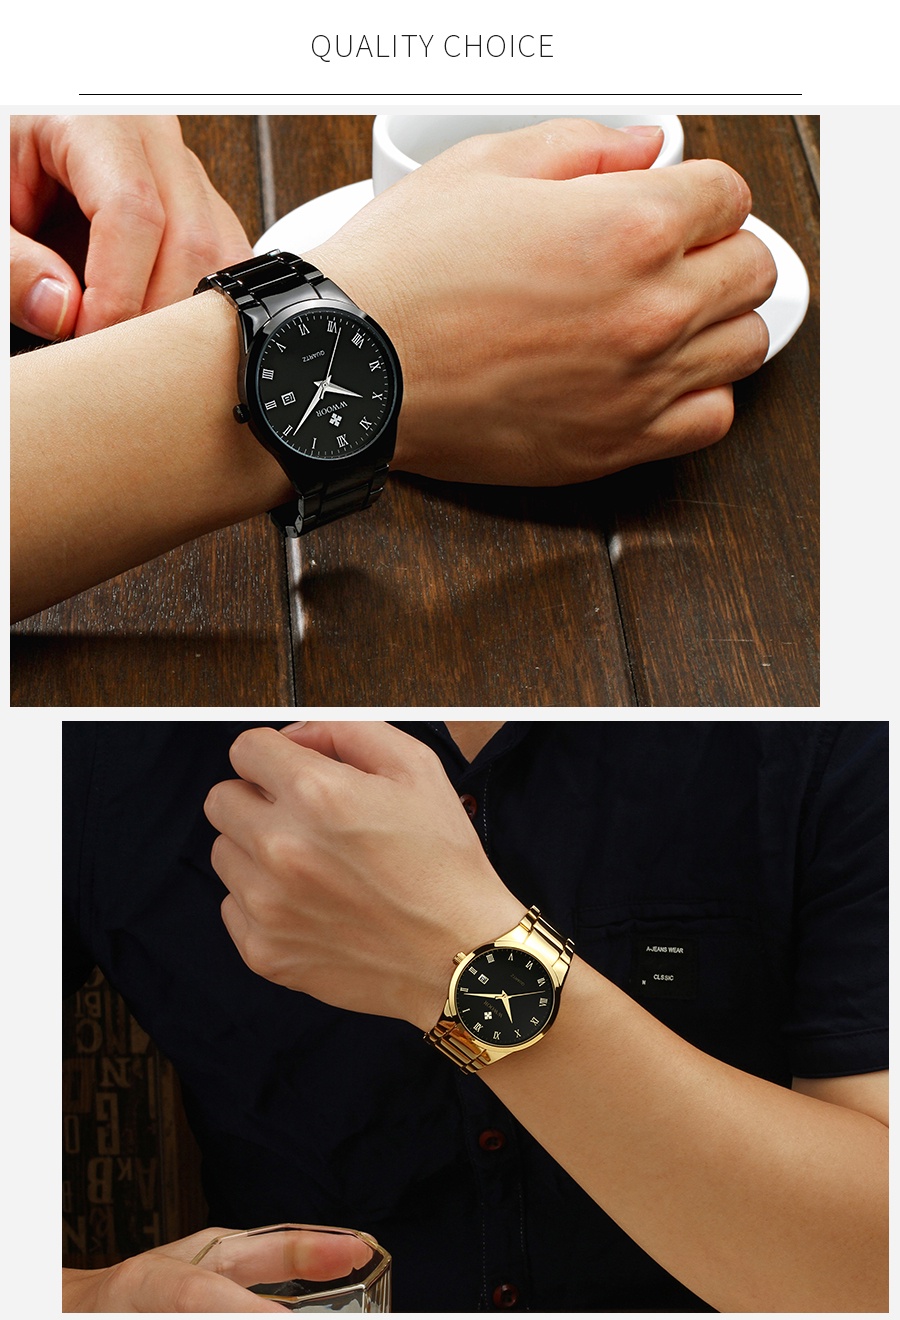 รูปภาพเพิ่มเติมของ WWOOR นาฬิกาควอตซ์ กันน้ำ สายสเตนเลส สินค้าแฟชั่น สำหรับผู้ชาย-8830